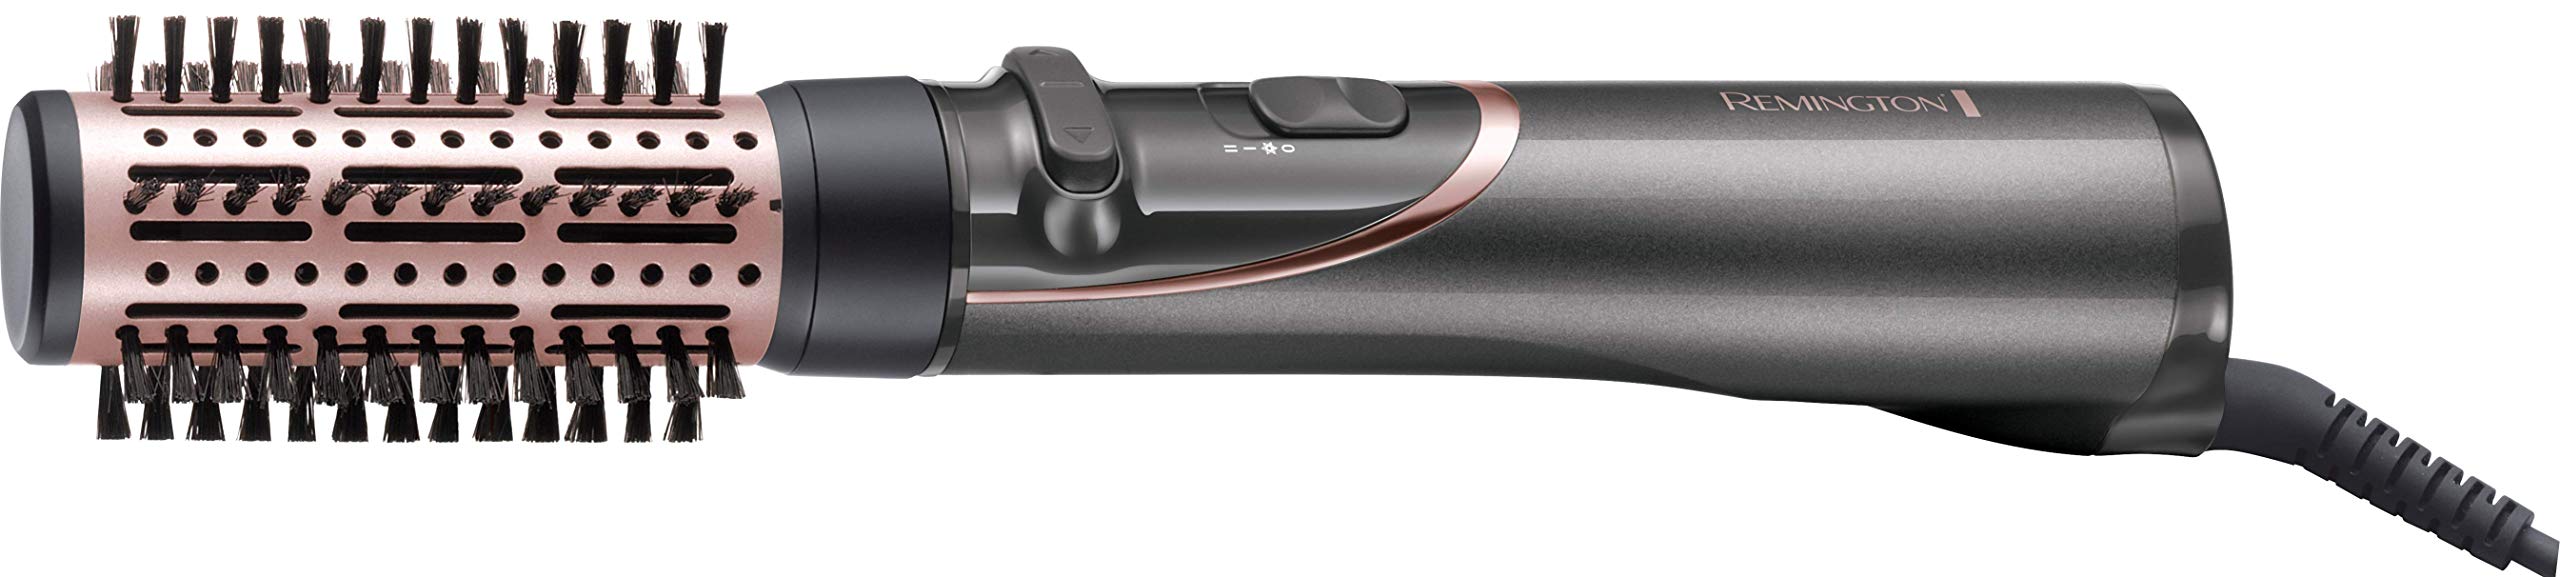 Remington suszarko-lokówka obrotowa z jonizacją, wymienne nakładki i koncentrator, 2 ust. temperatury, zimny nawiew, etui w zestawie, moc 800W, srebrno-różowa, Curl&Straight Confidence AS8606